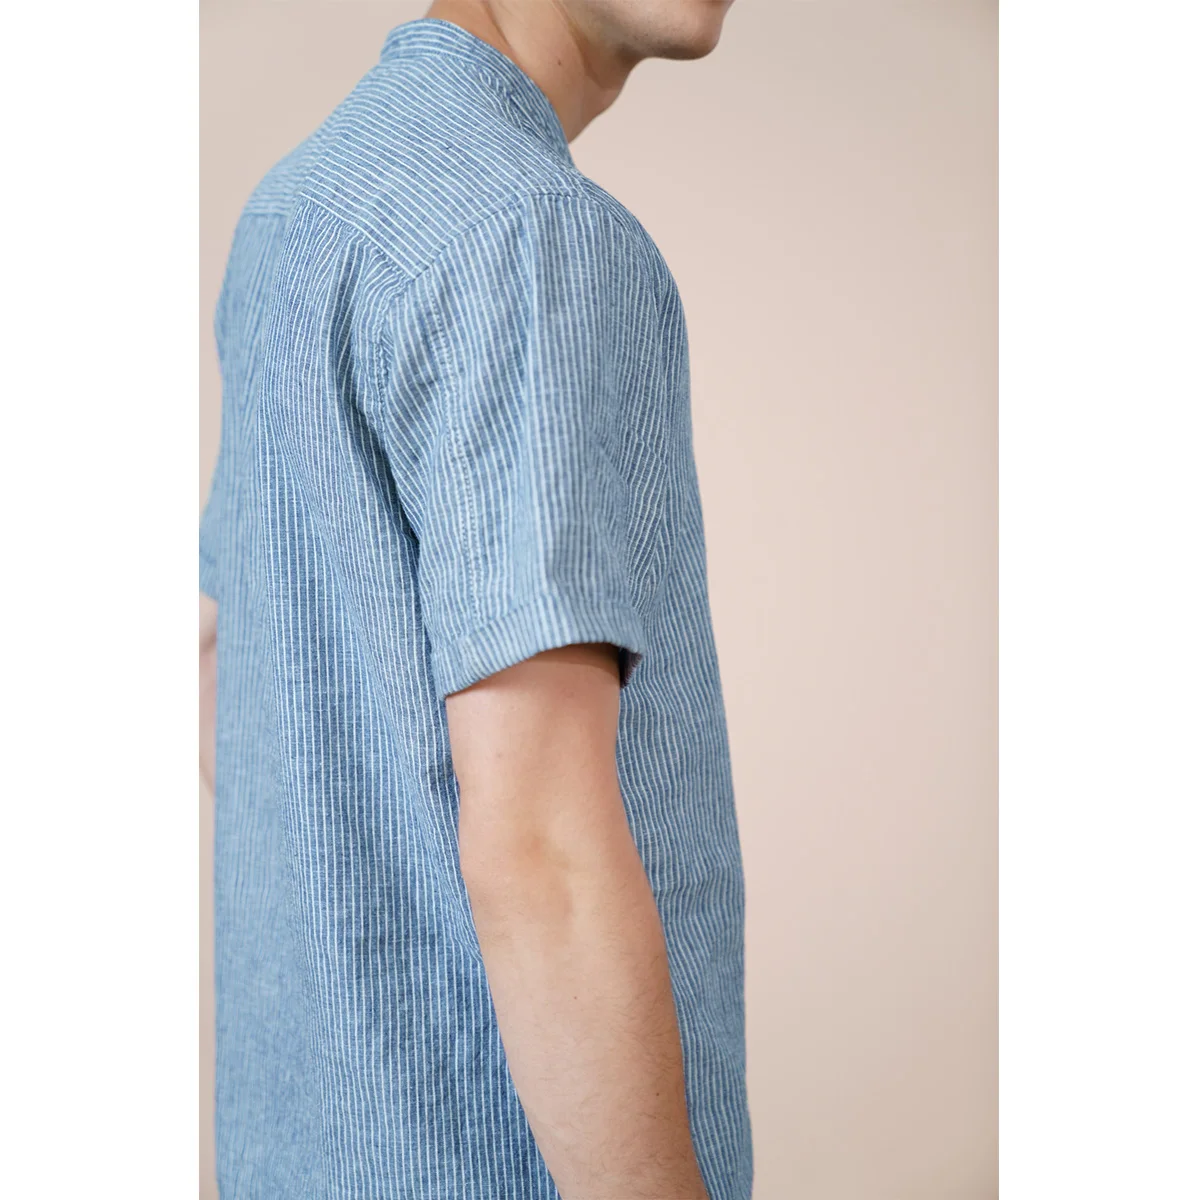 Camisa de algodón y lino para hombre, camisas de manga corta, transpirables, cómodas, sin cuello, rayas verticales 4